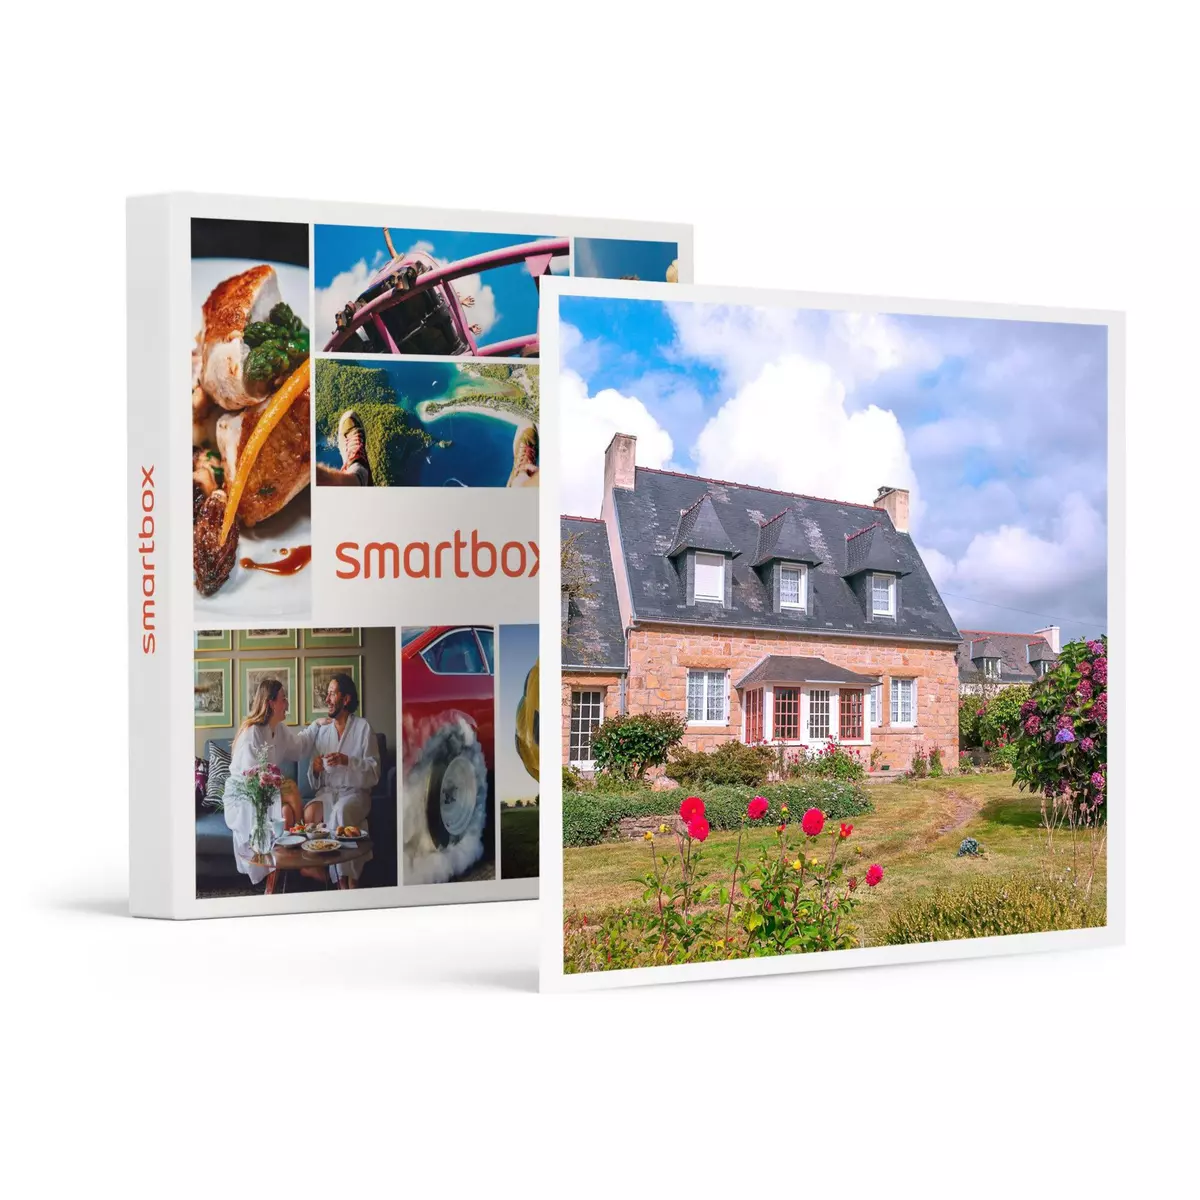 Smartbox Séjour champêtre de 3 jours en maison d'hôtes - Coffret Cadeau Séjour